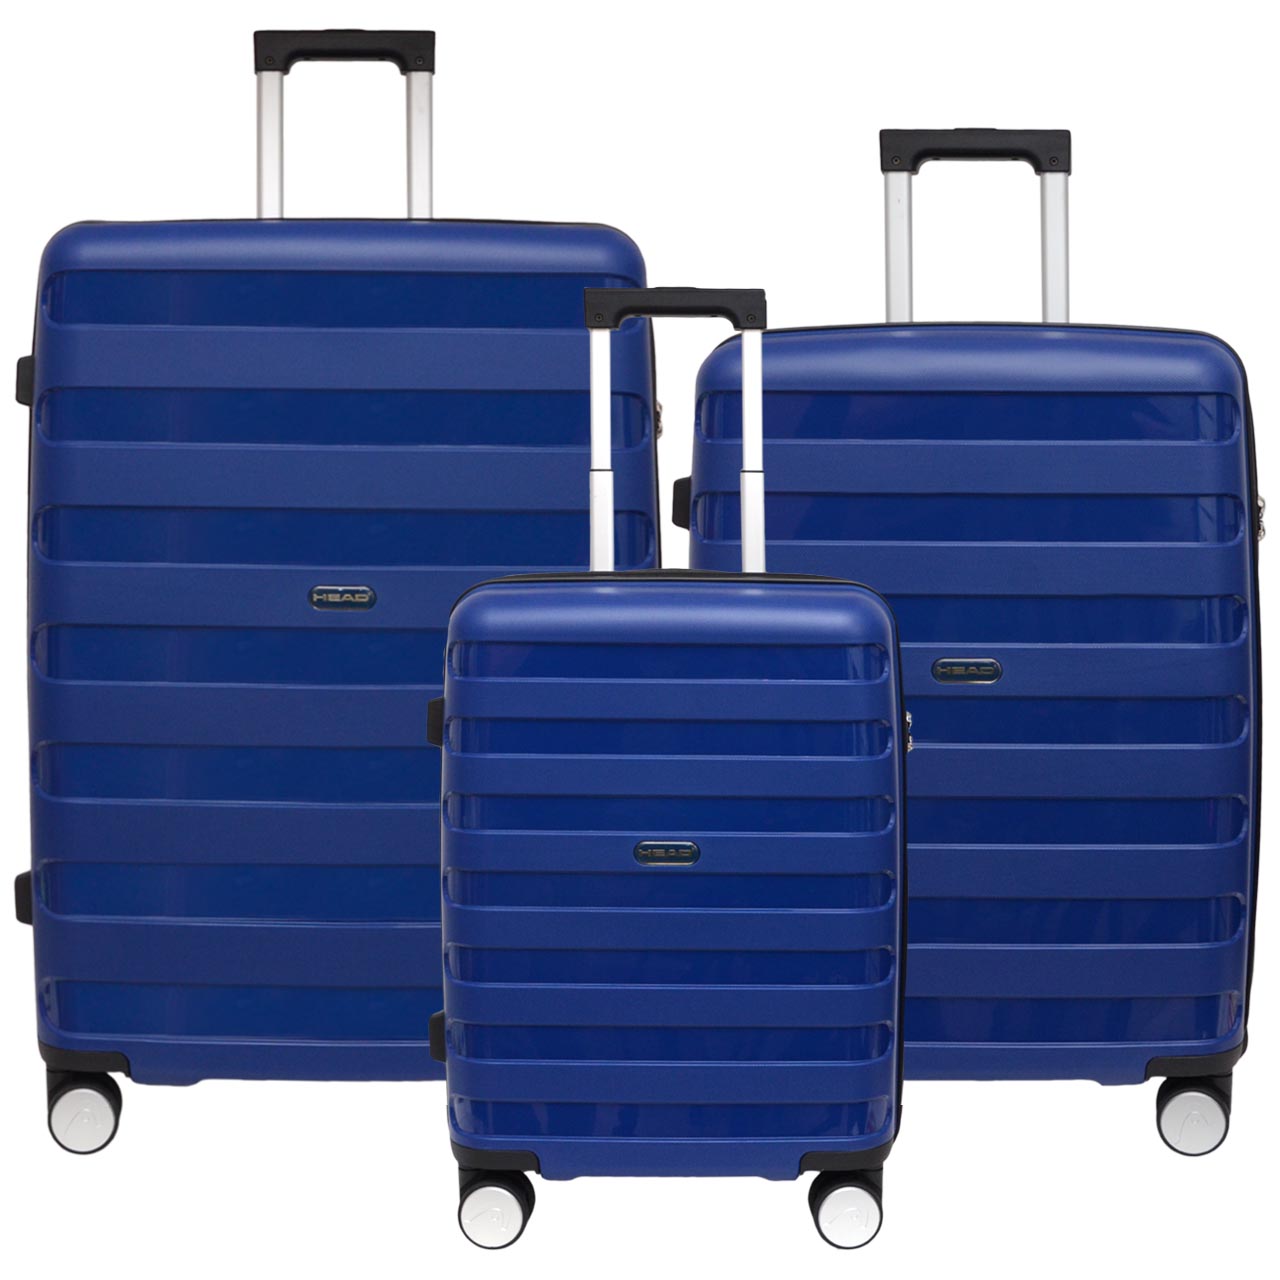 نکته خرید - قیمت روز مجموعه سه عددی چمدان هد مدل HL 004 خرید